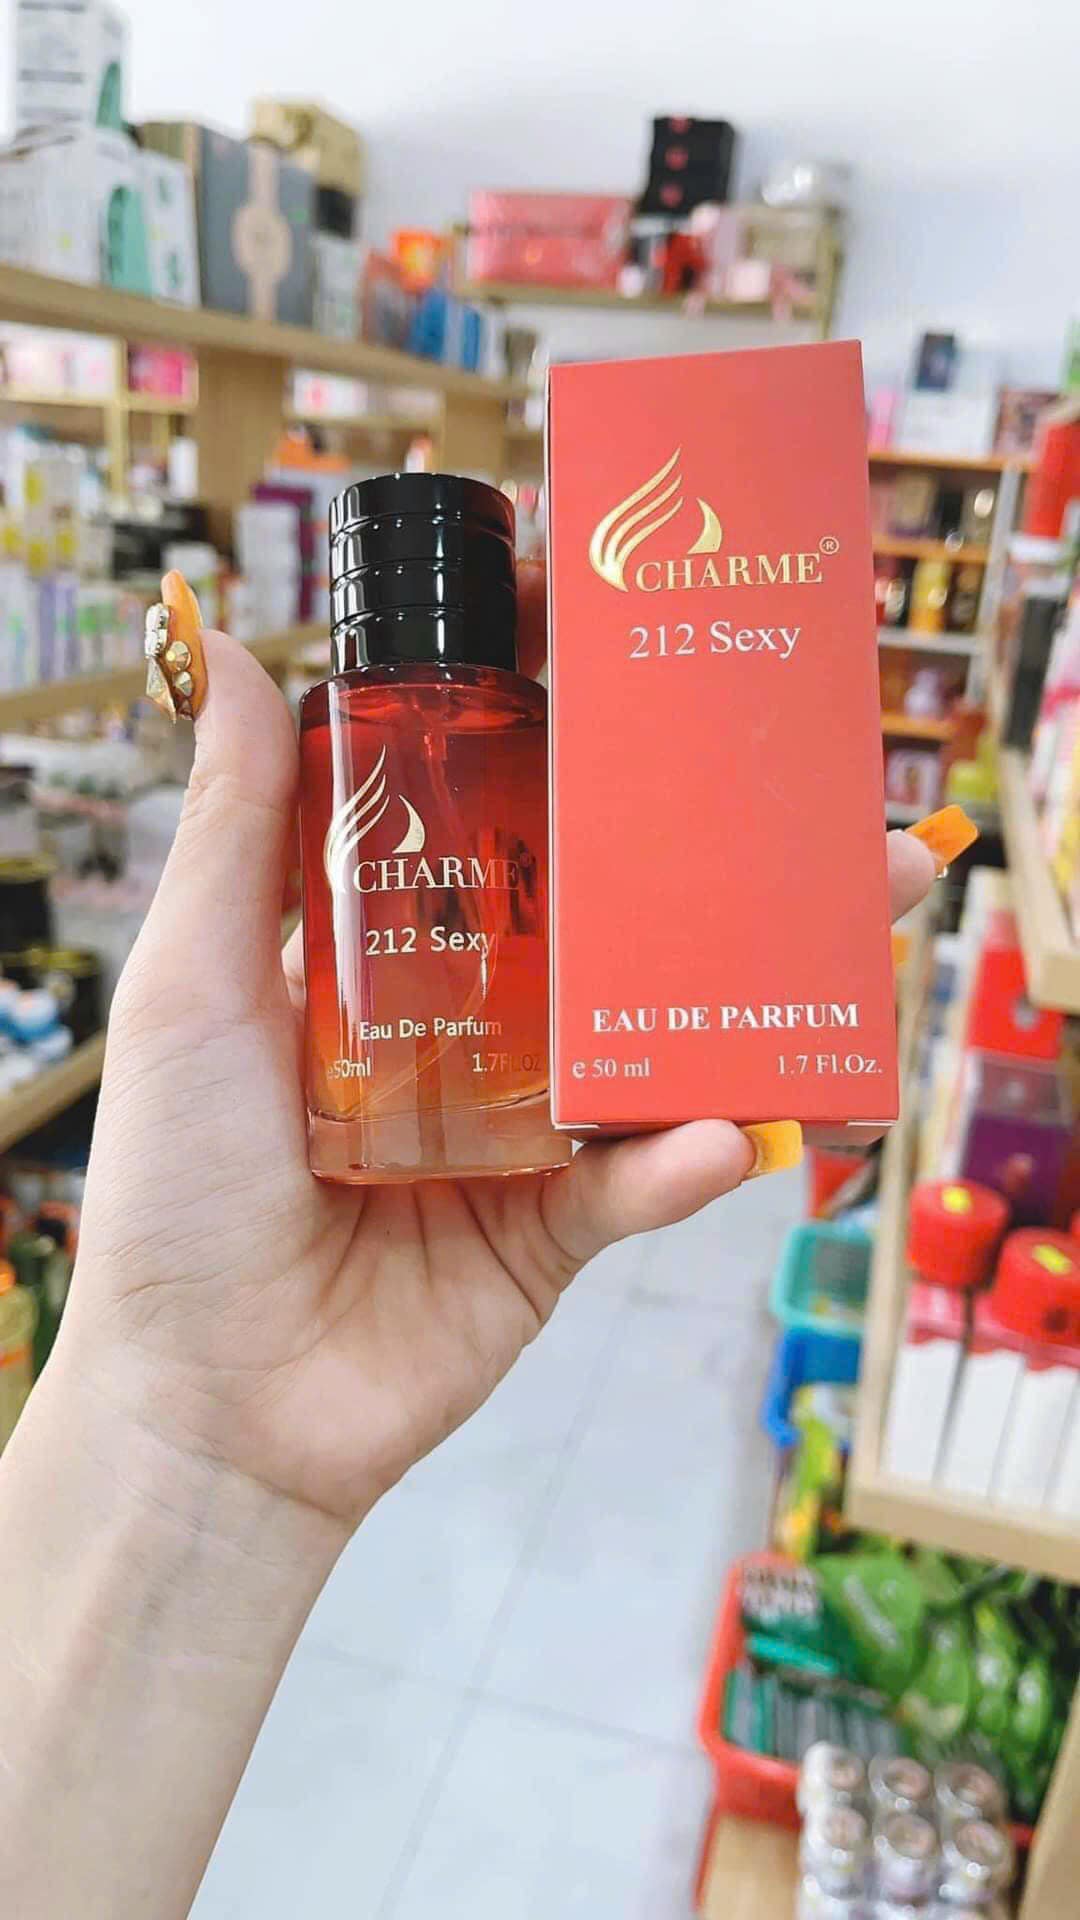 Nước Hoa  Charme 212 Sexy 50ml Nam & Nữ đều dùng được mùi hương này nhé